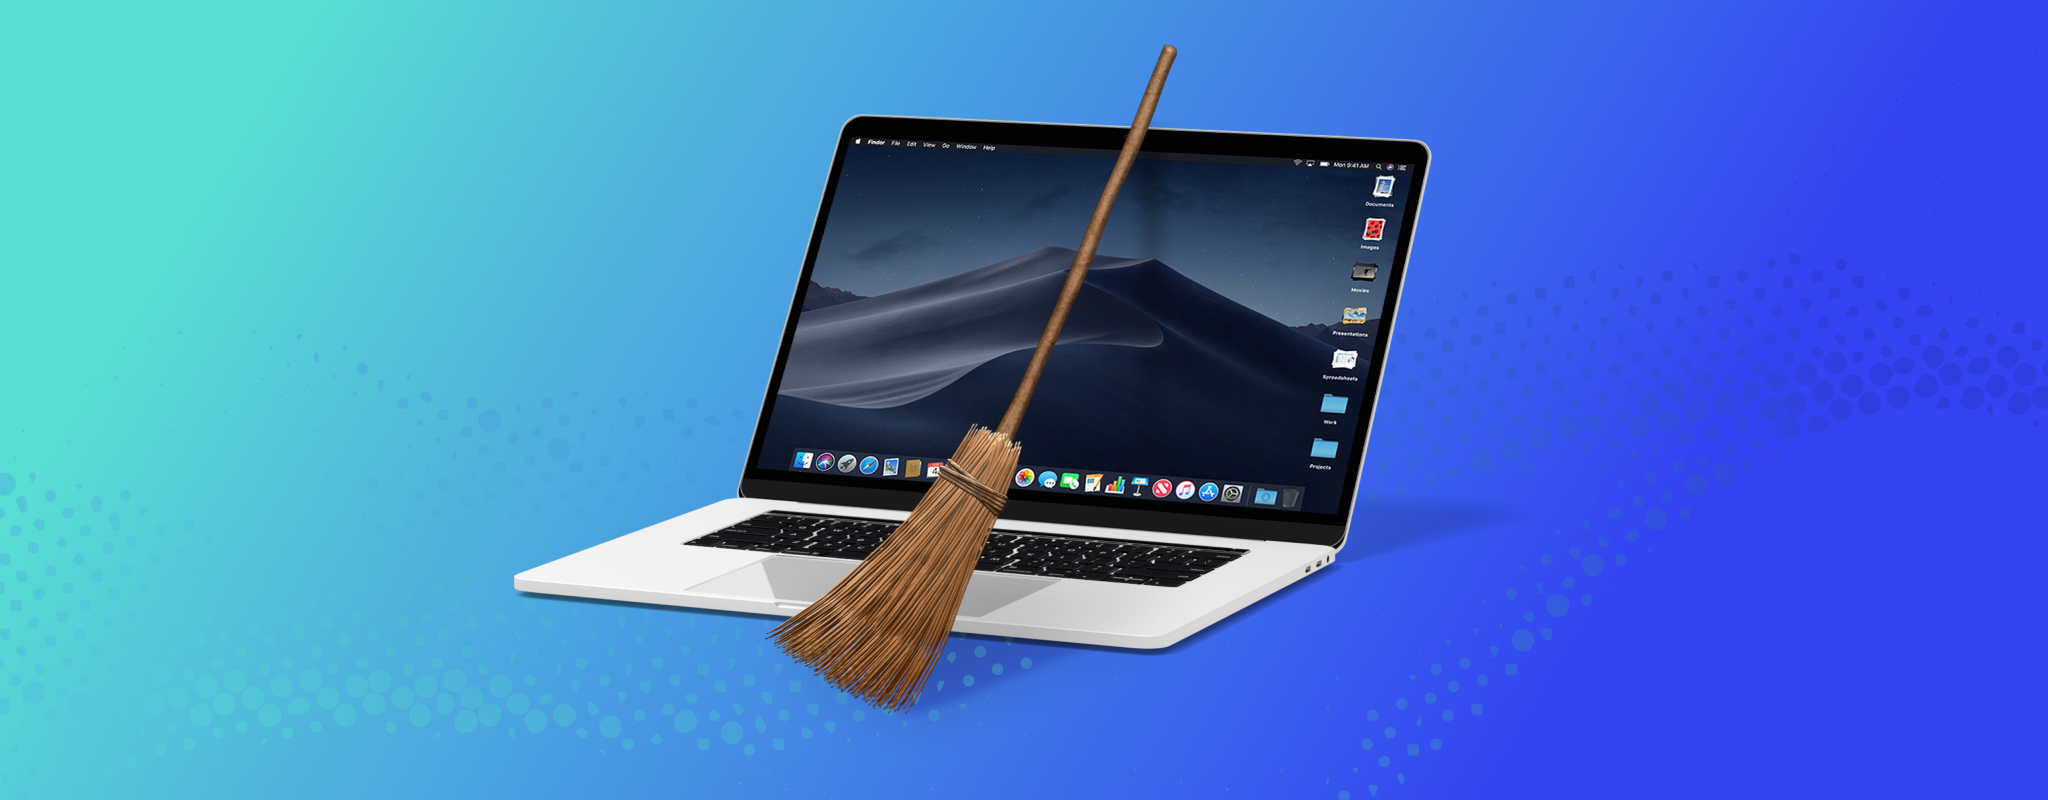 free virus cleaner for mac sierra free download